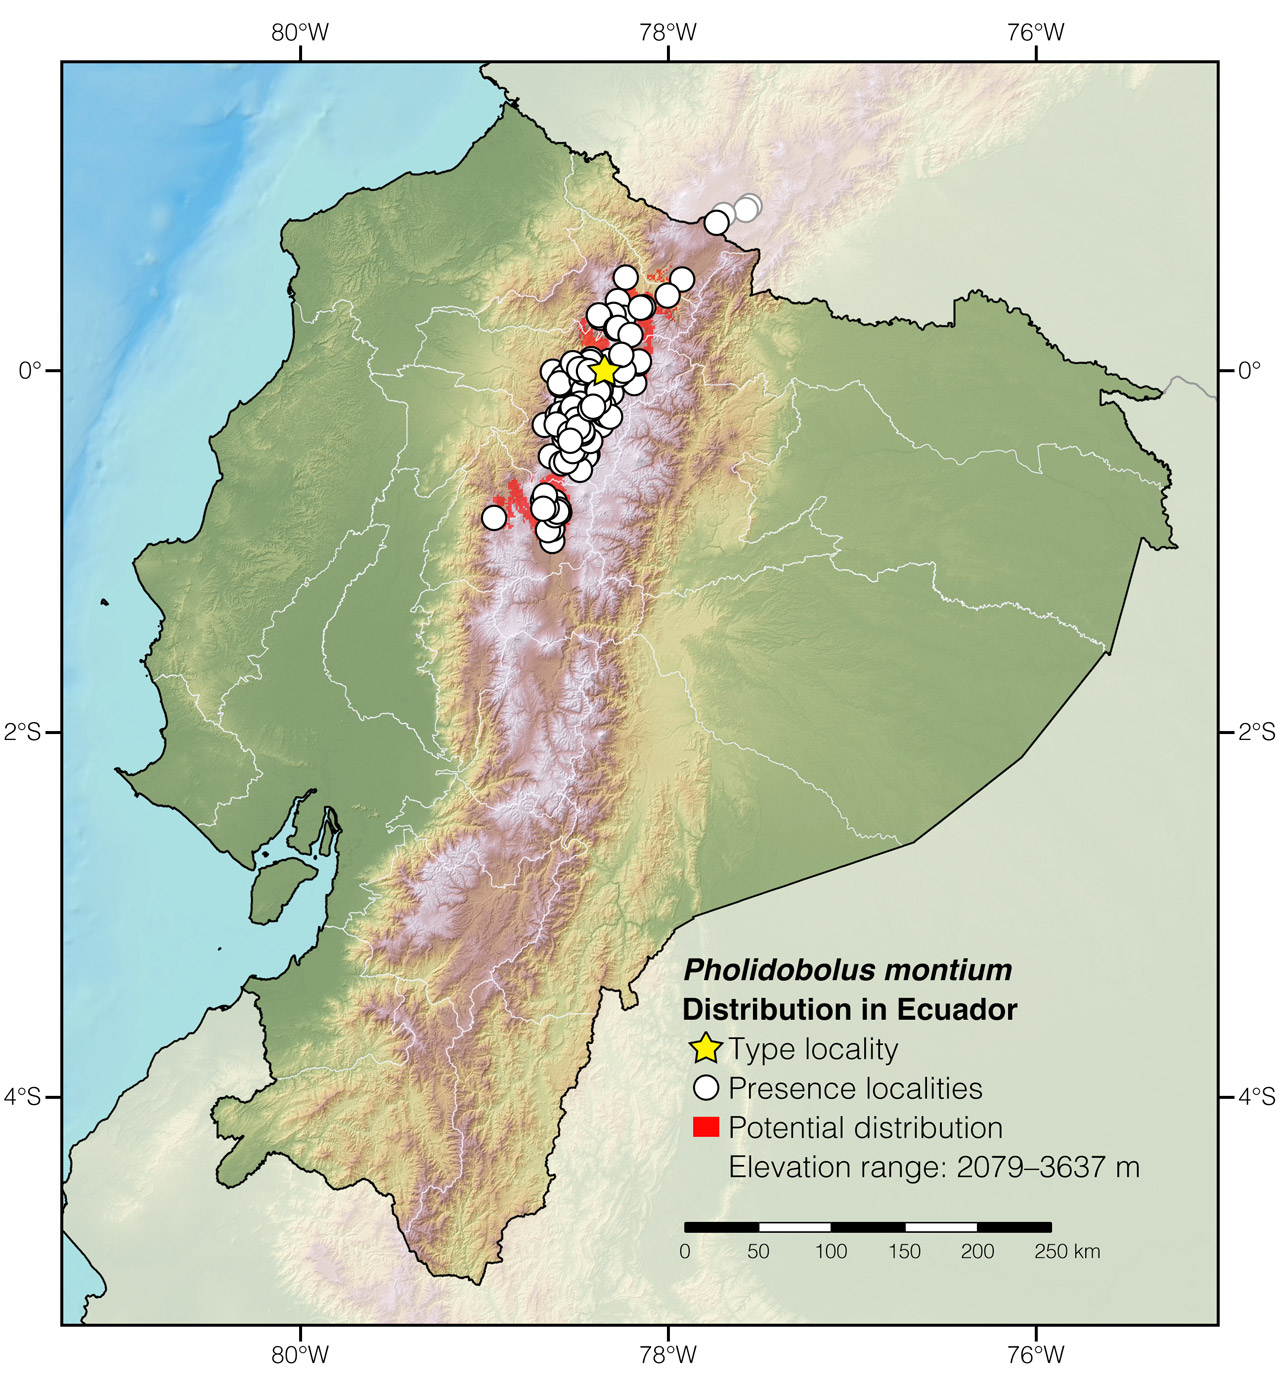 Distribution of Pholidobolus montium in Ecuador